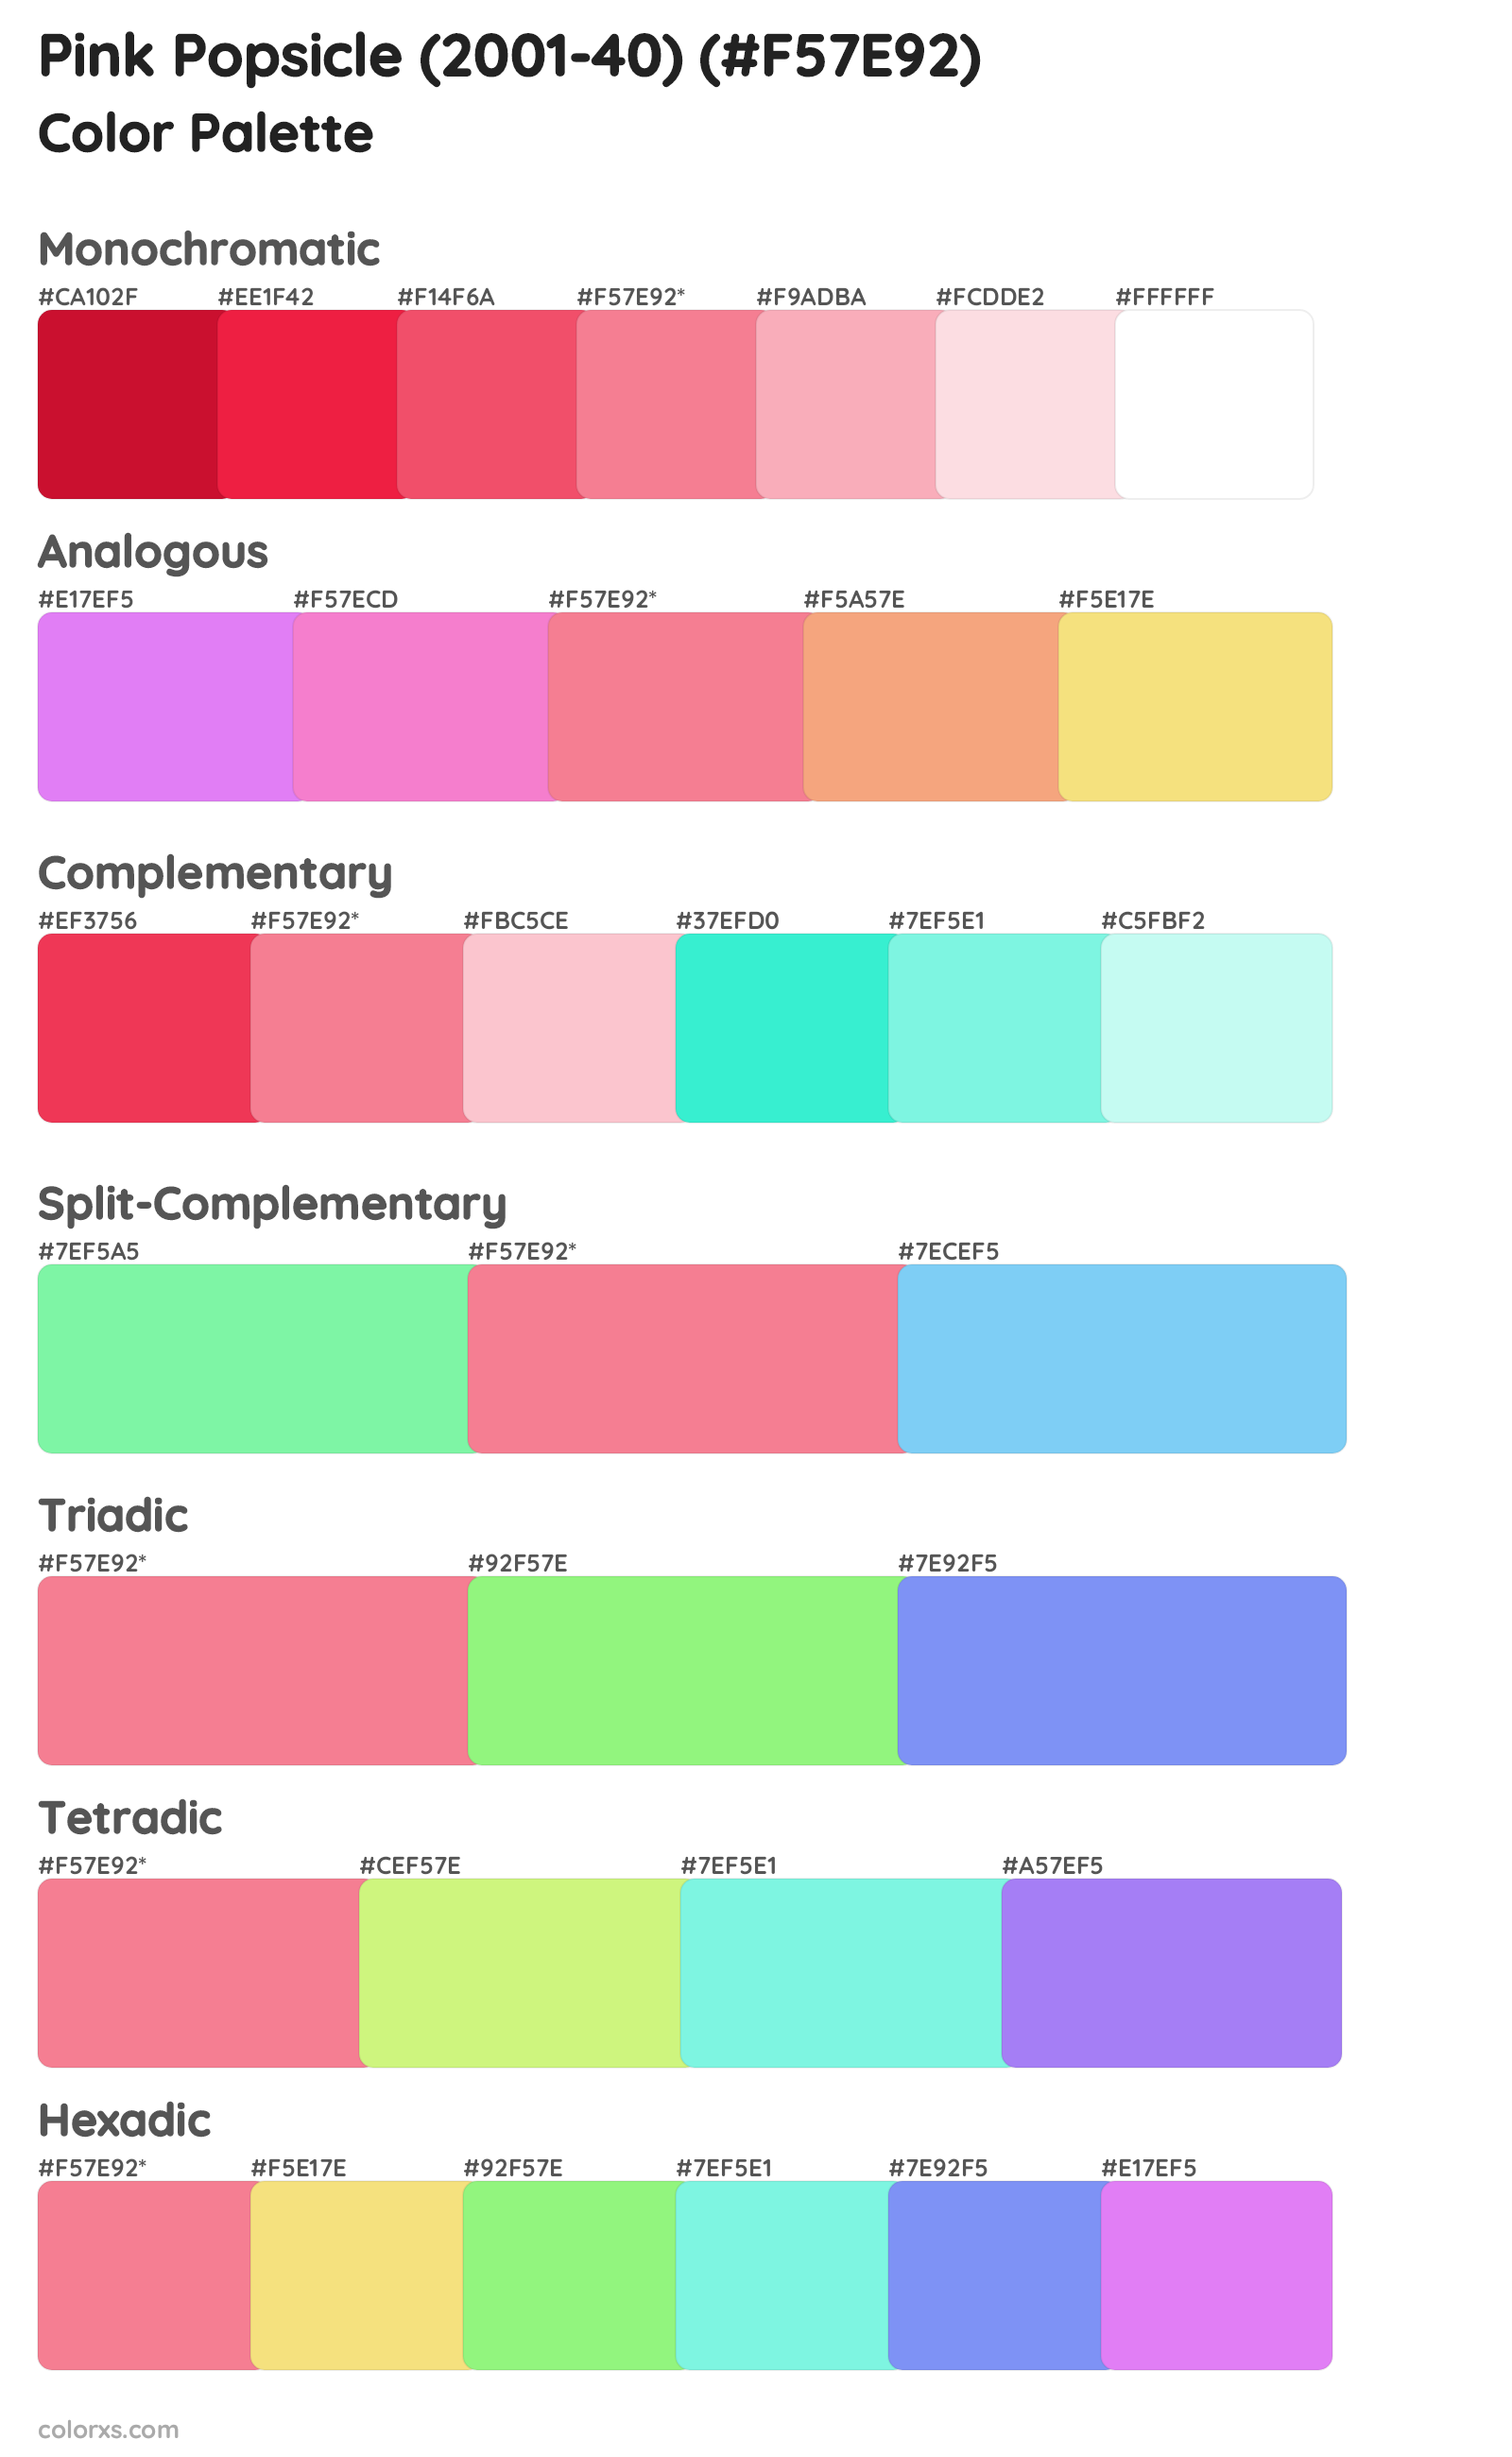 Pink Popsicle (2001-40) Color Scheme Palettes